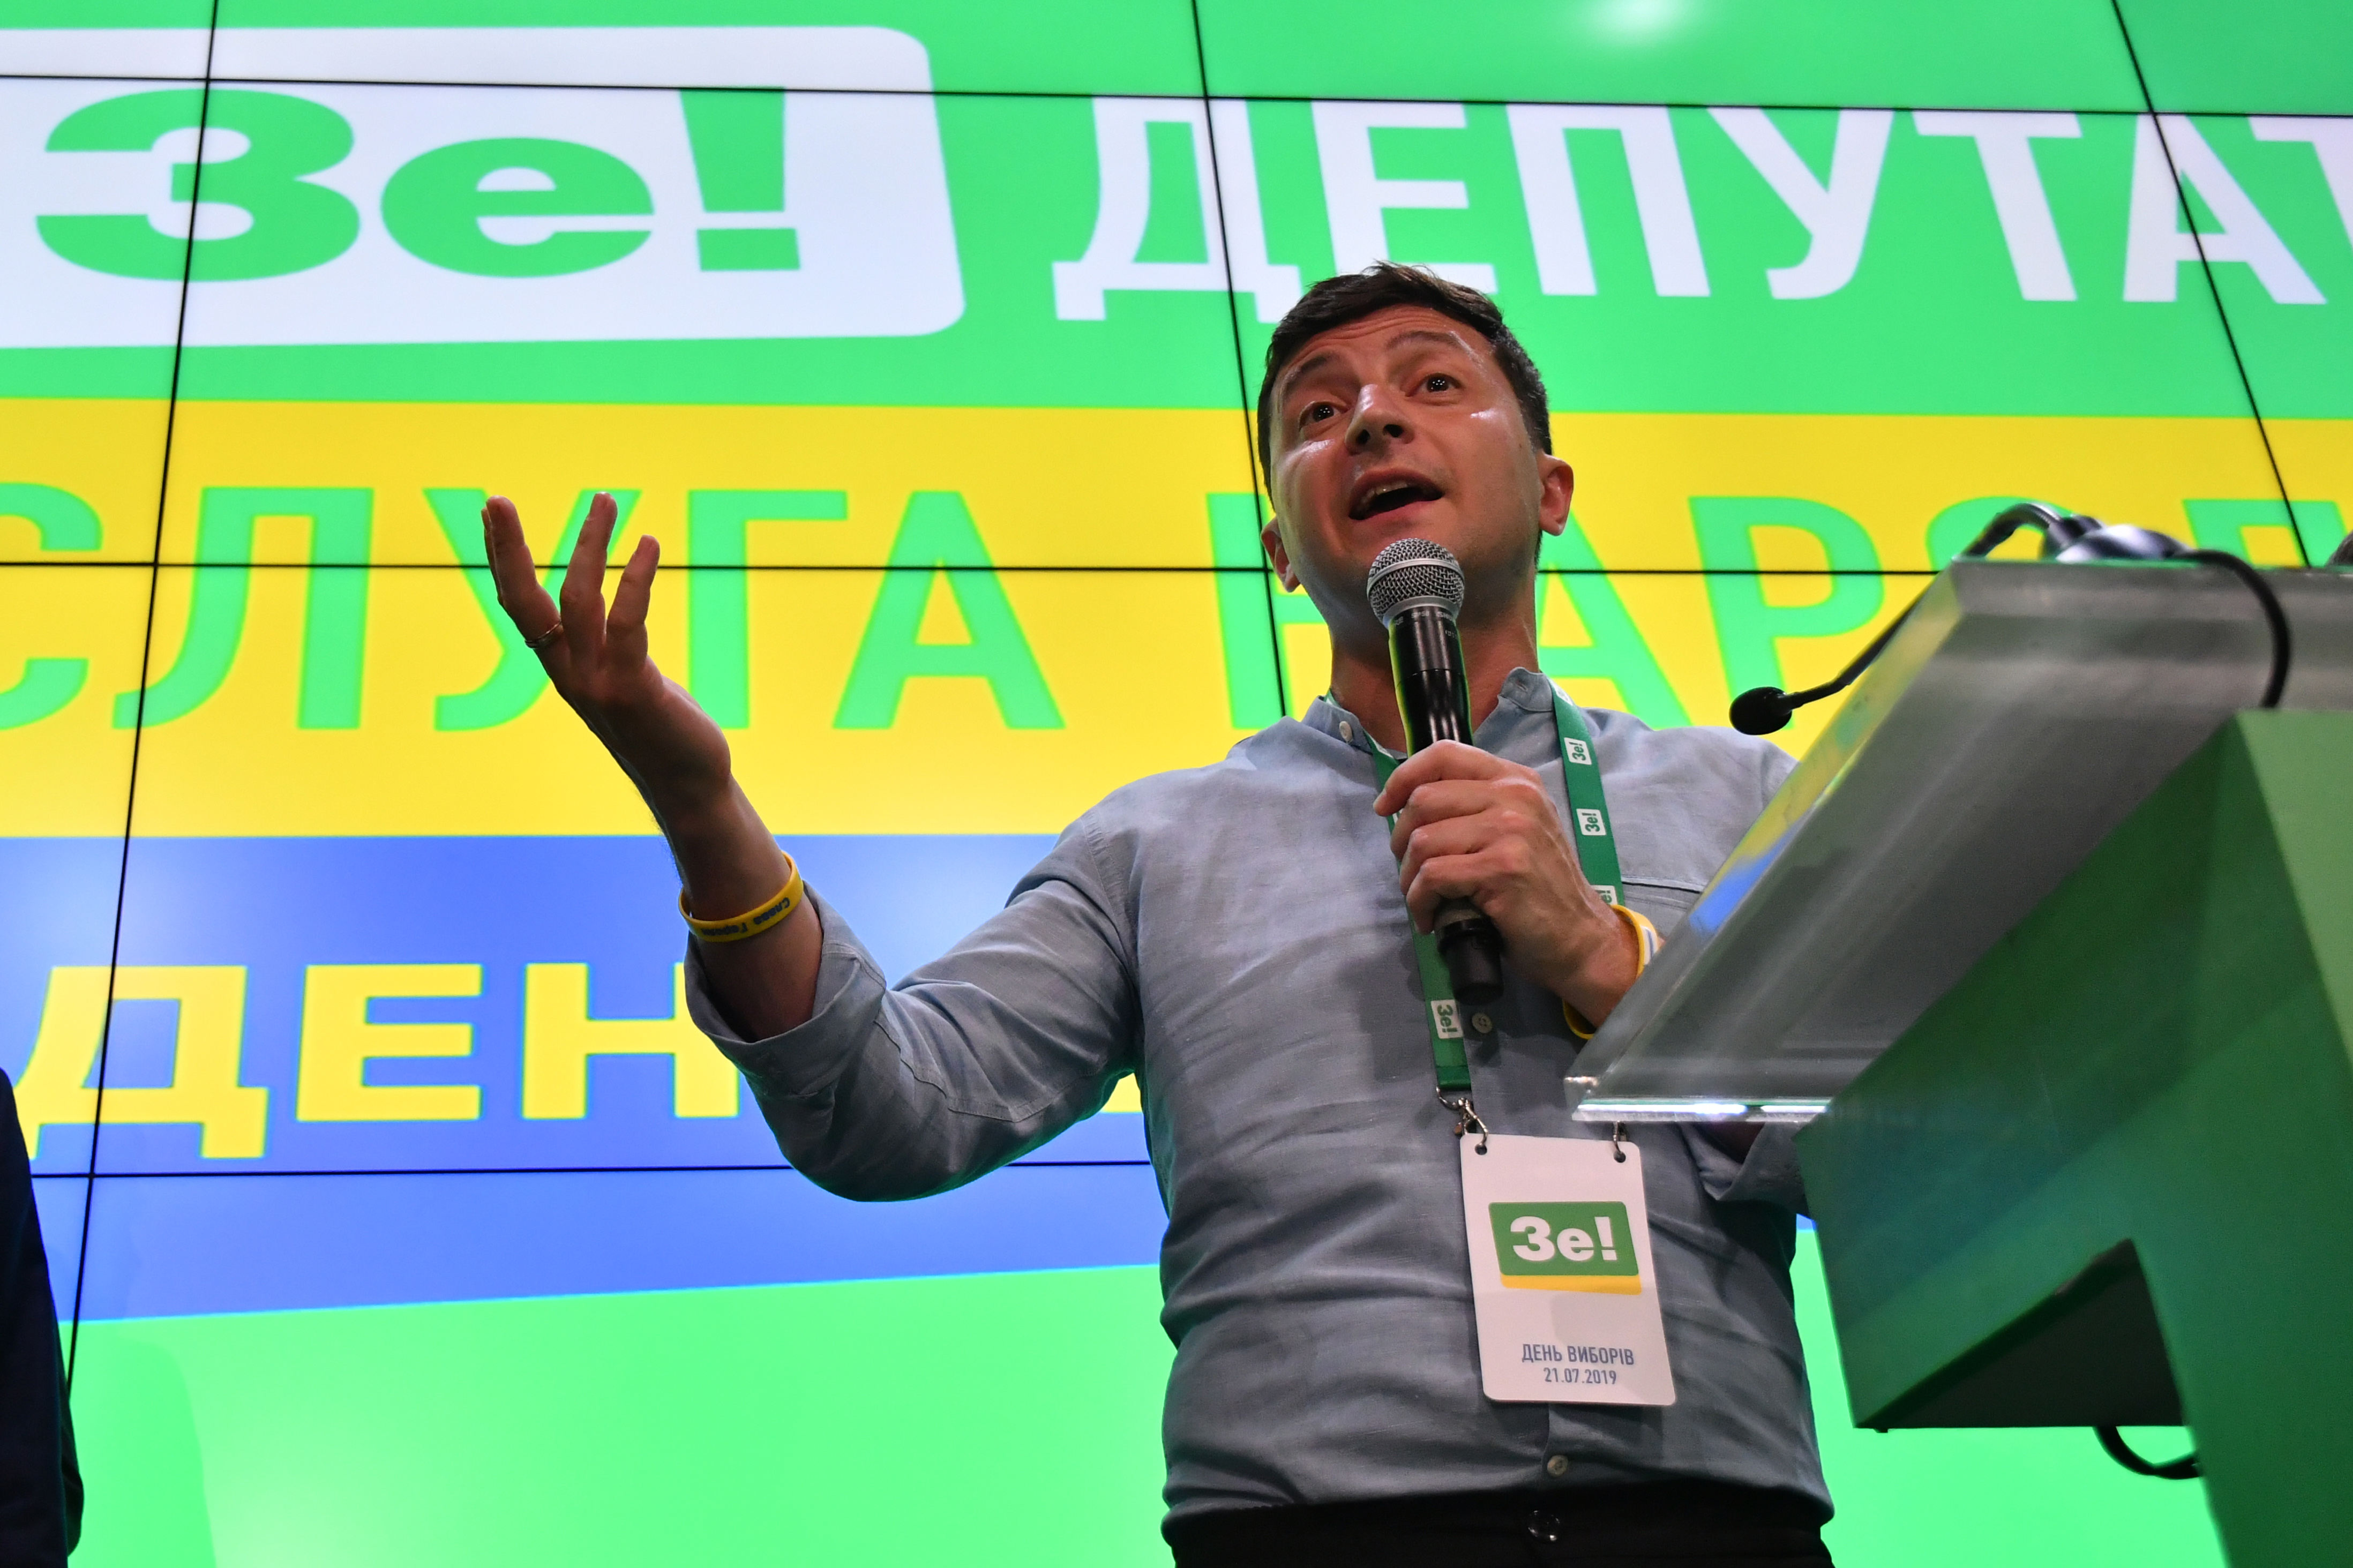 Hatalmasat nyert a sorozatszínészből lett elnök az ukrán választáson